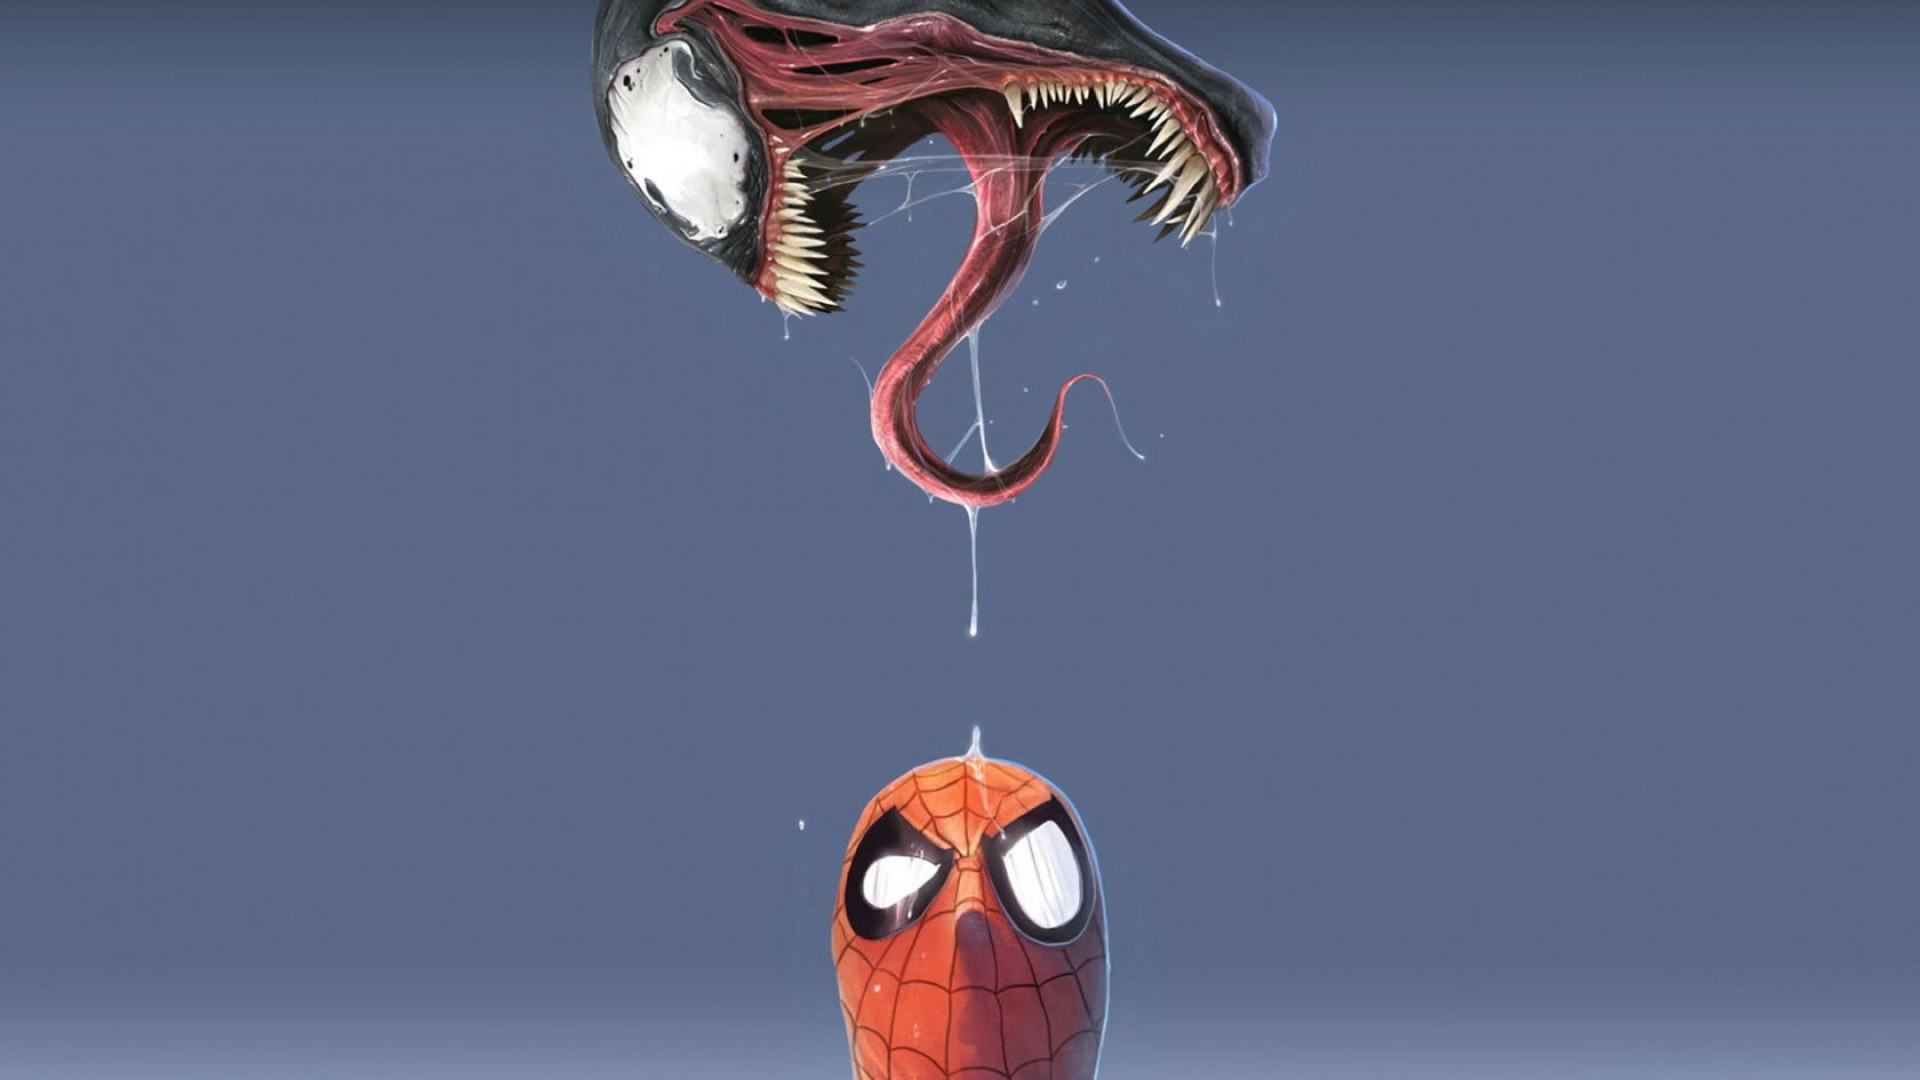 Marvel Spider Man And Venom Digital Wallpapers • Wallpapers For You HD Wallpapers For Desktop & Mobile